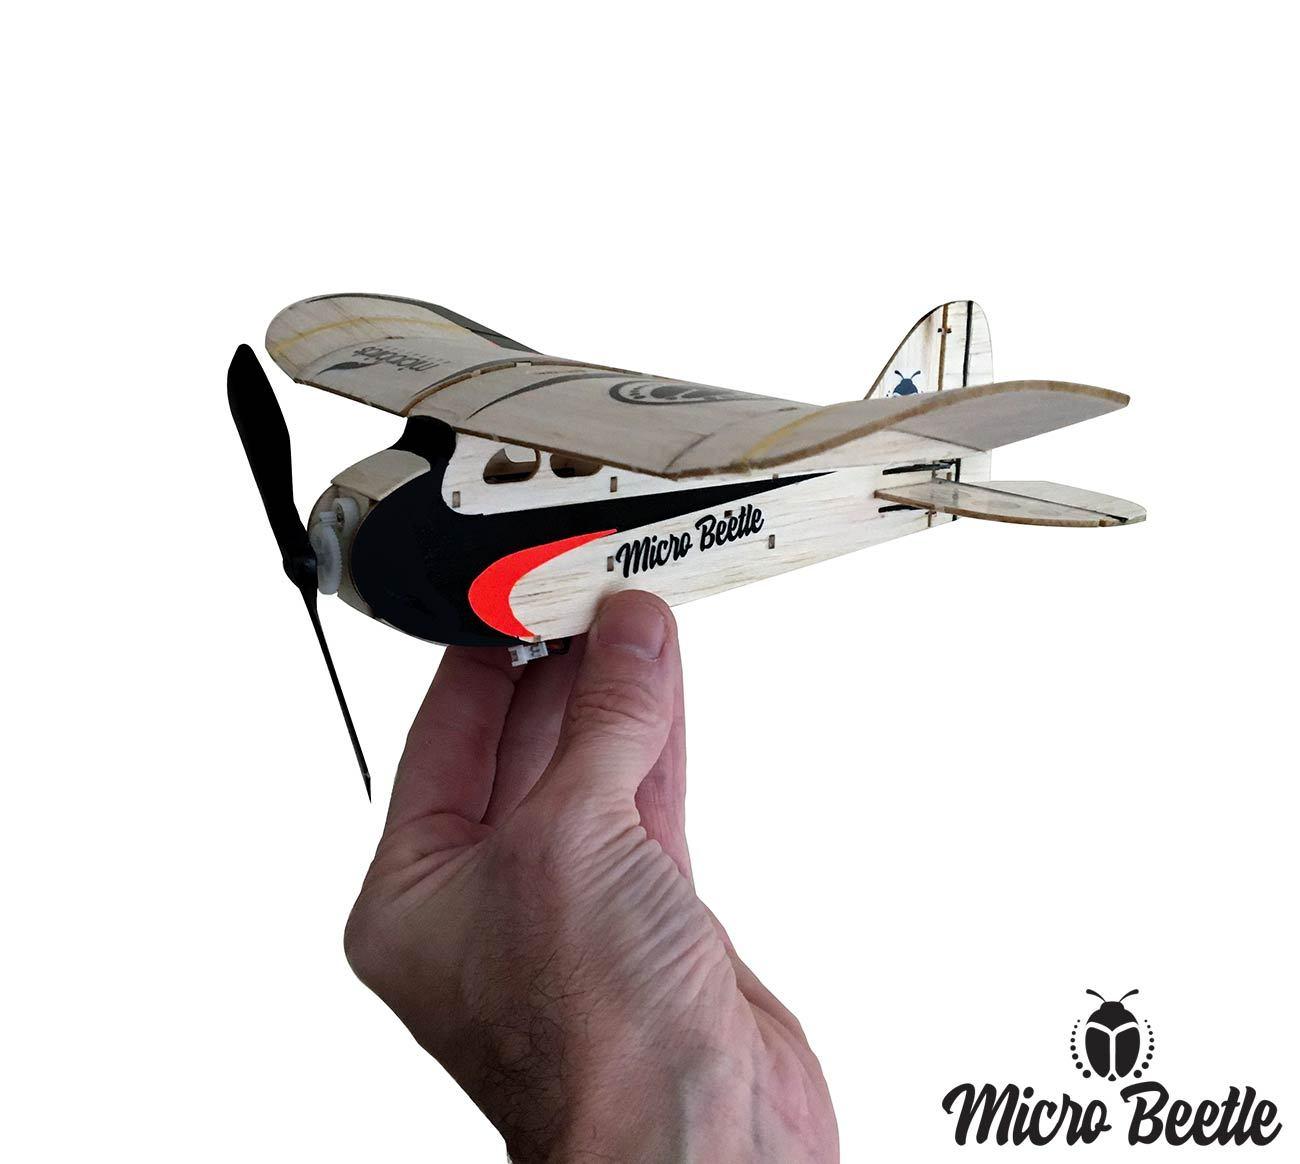 Micro Beetle Rc Plane: Tips for Safe and Enjoyable Flying.